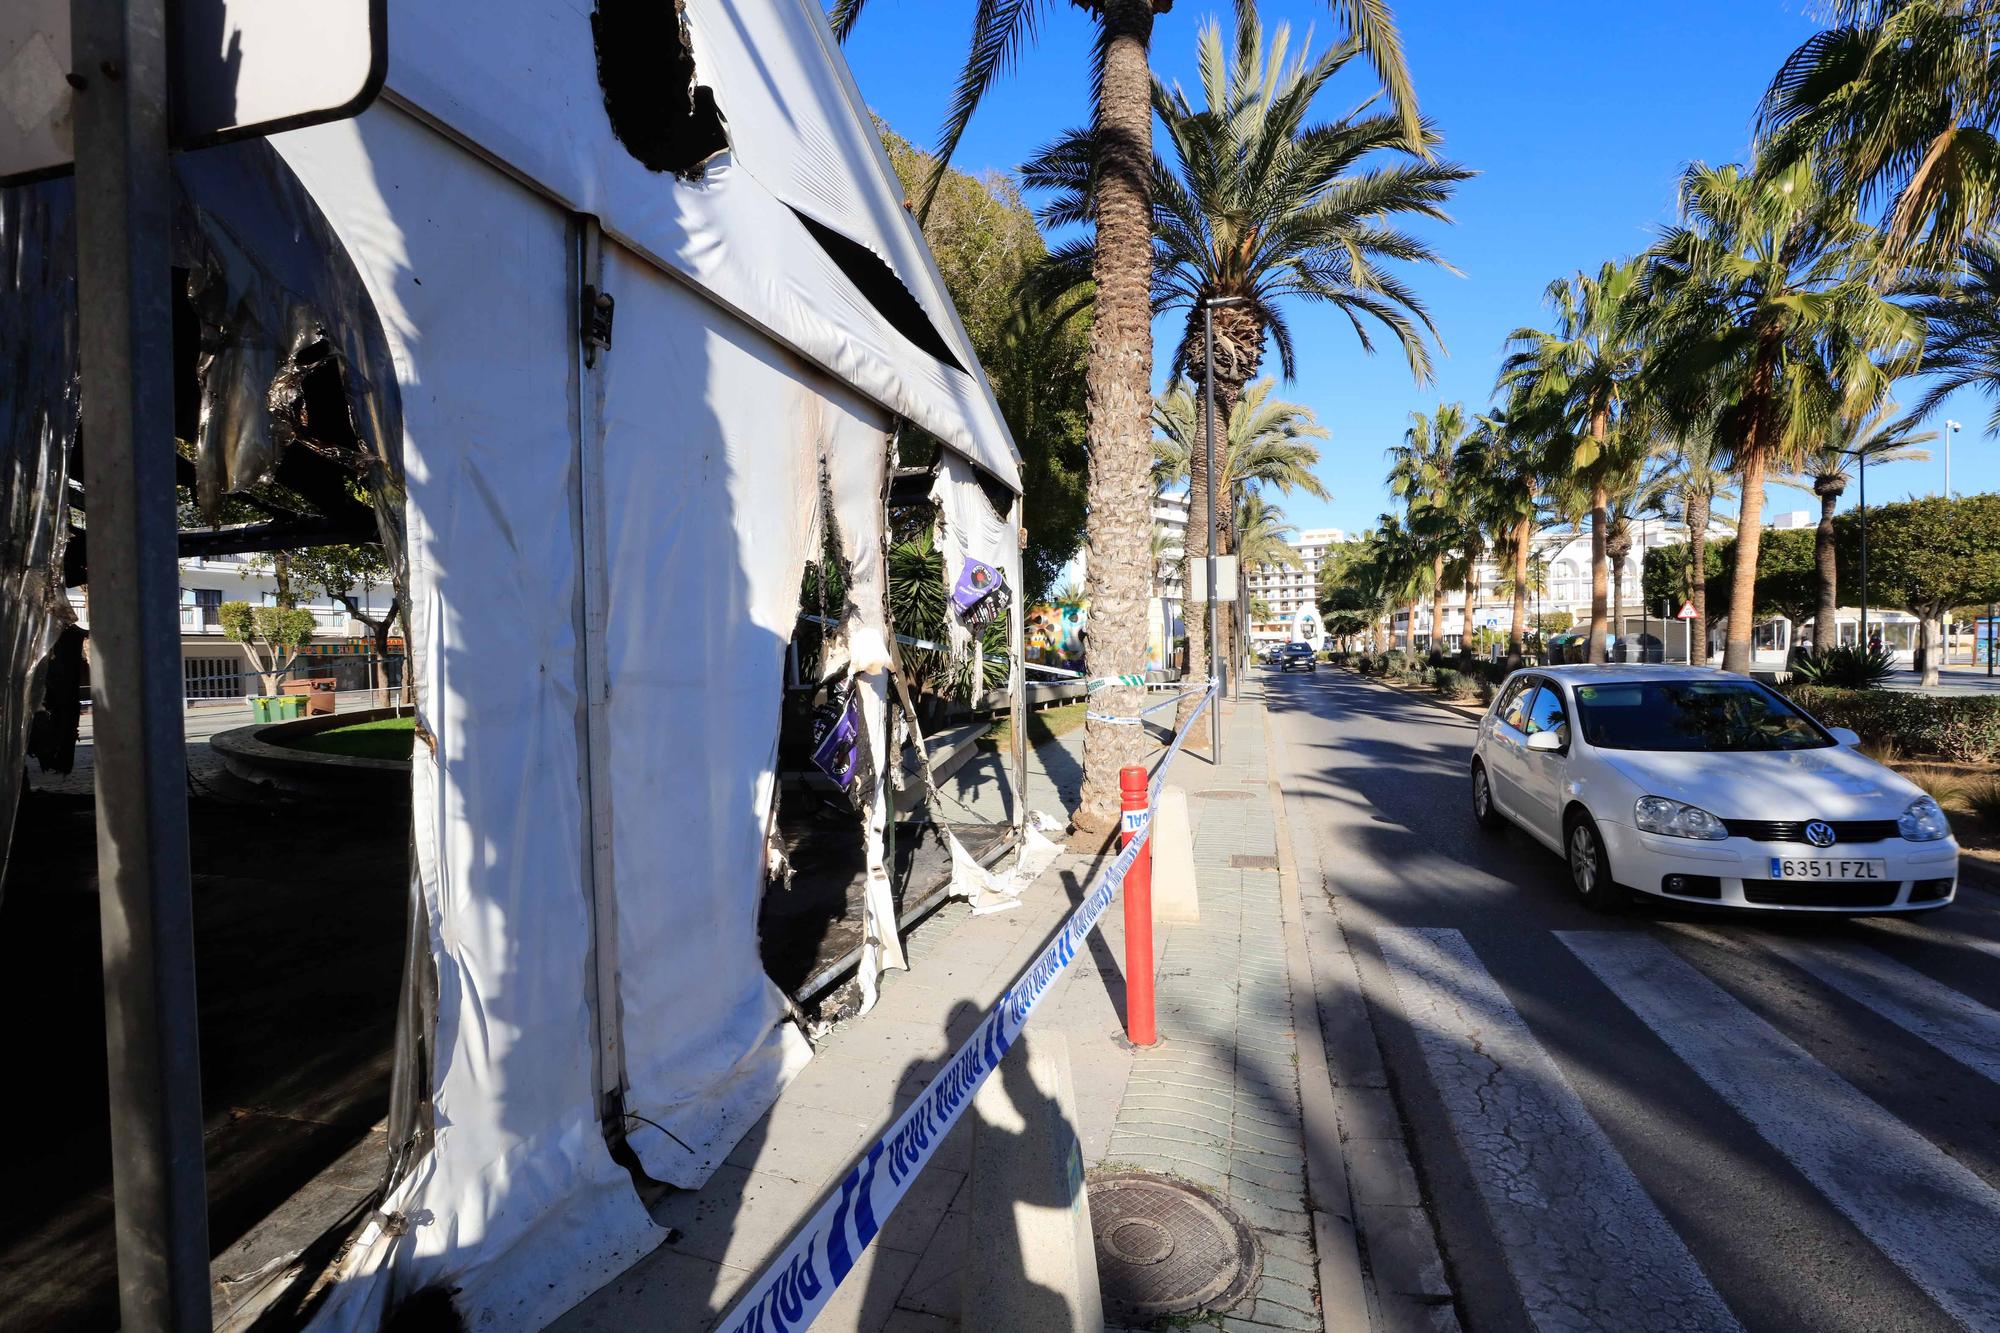 Oleada de incendios en Ibiza: una carpa, contenedores y coches quemados en Sant Antoni